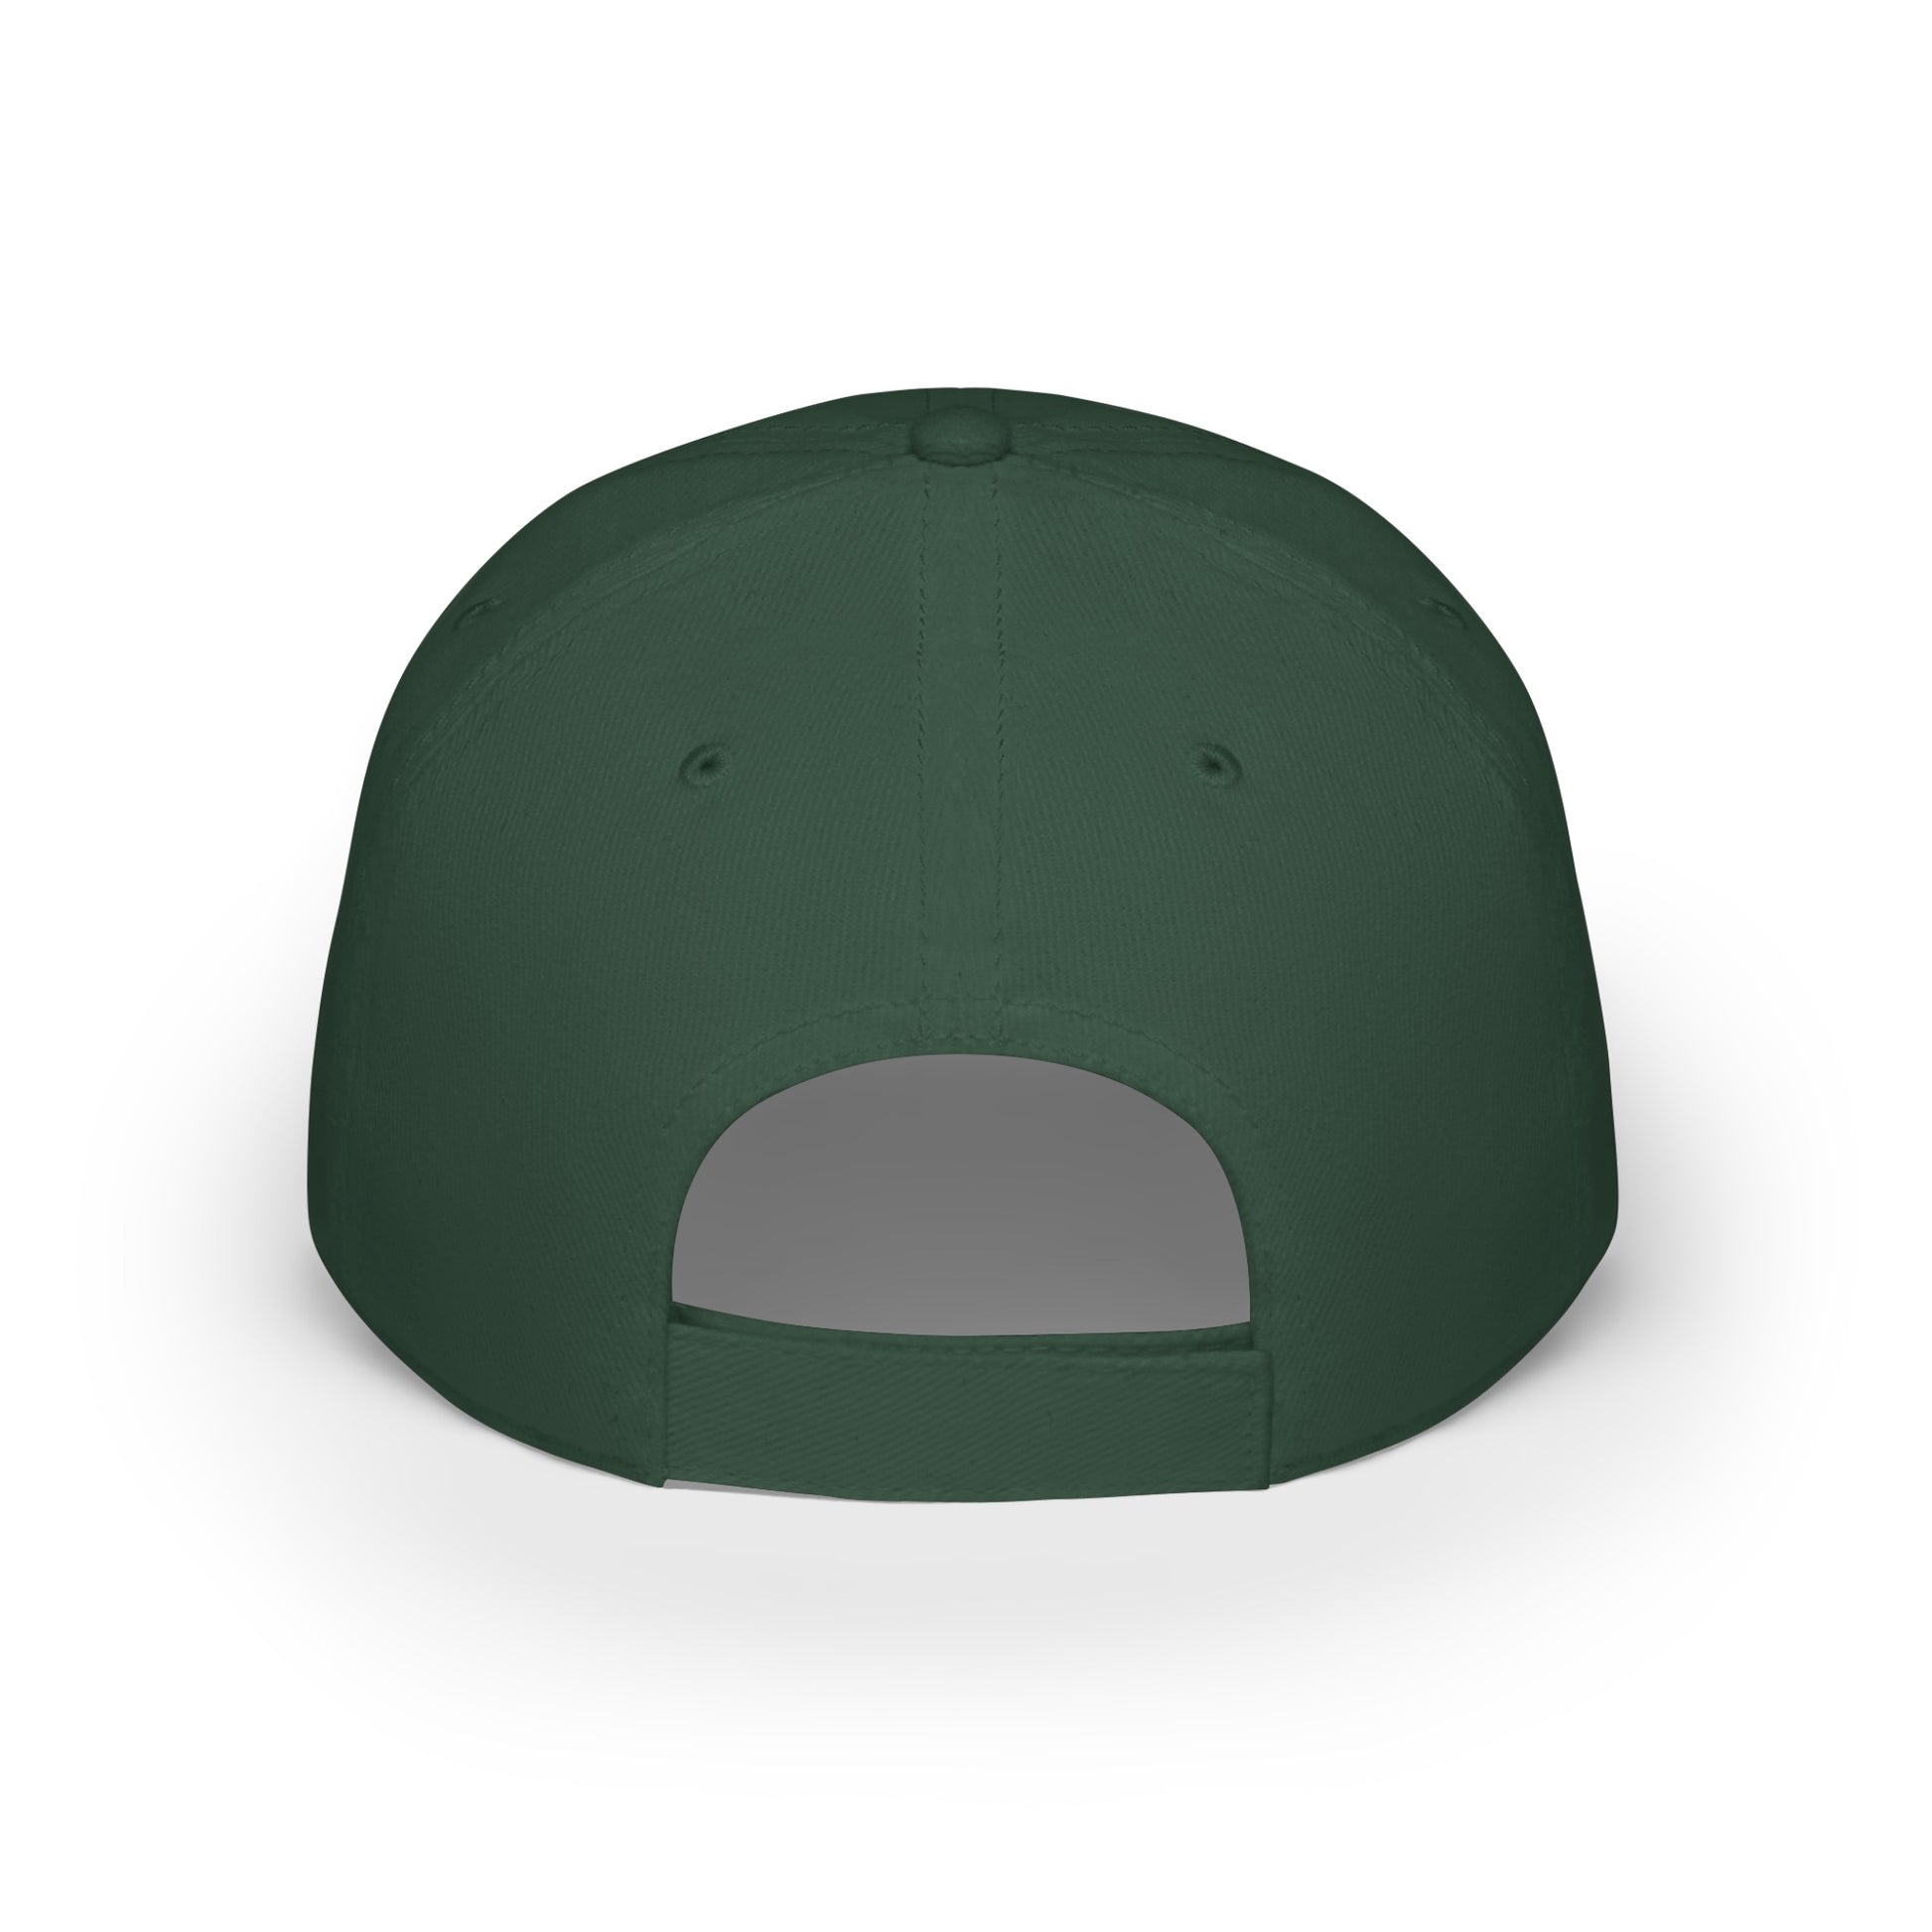 MDBTDJ#SBRC - Low Profile Baseball Cap Tattooed Dj's Limited Edition, Hats, Tattooed Djs Shop